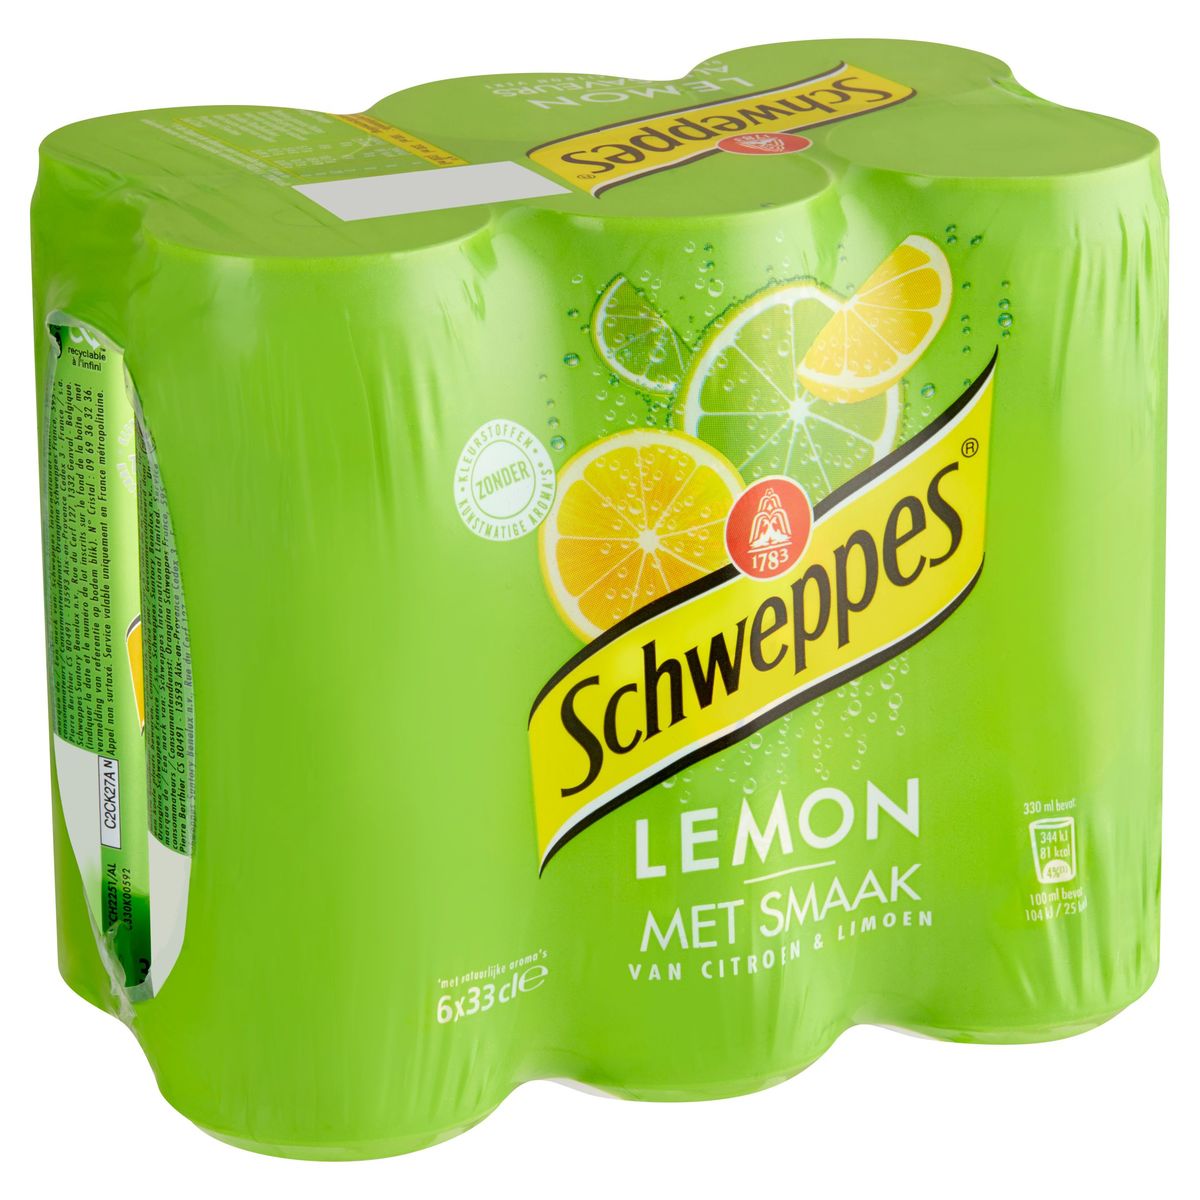 Schweppes Lemon aux Saveurs de Citron et Citron Vert 6 x 33 cl